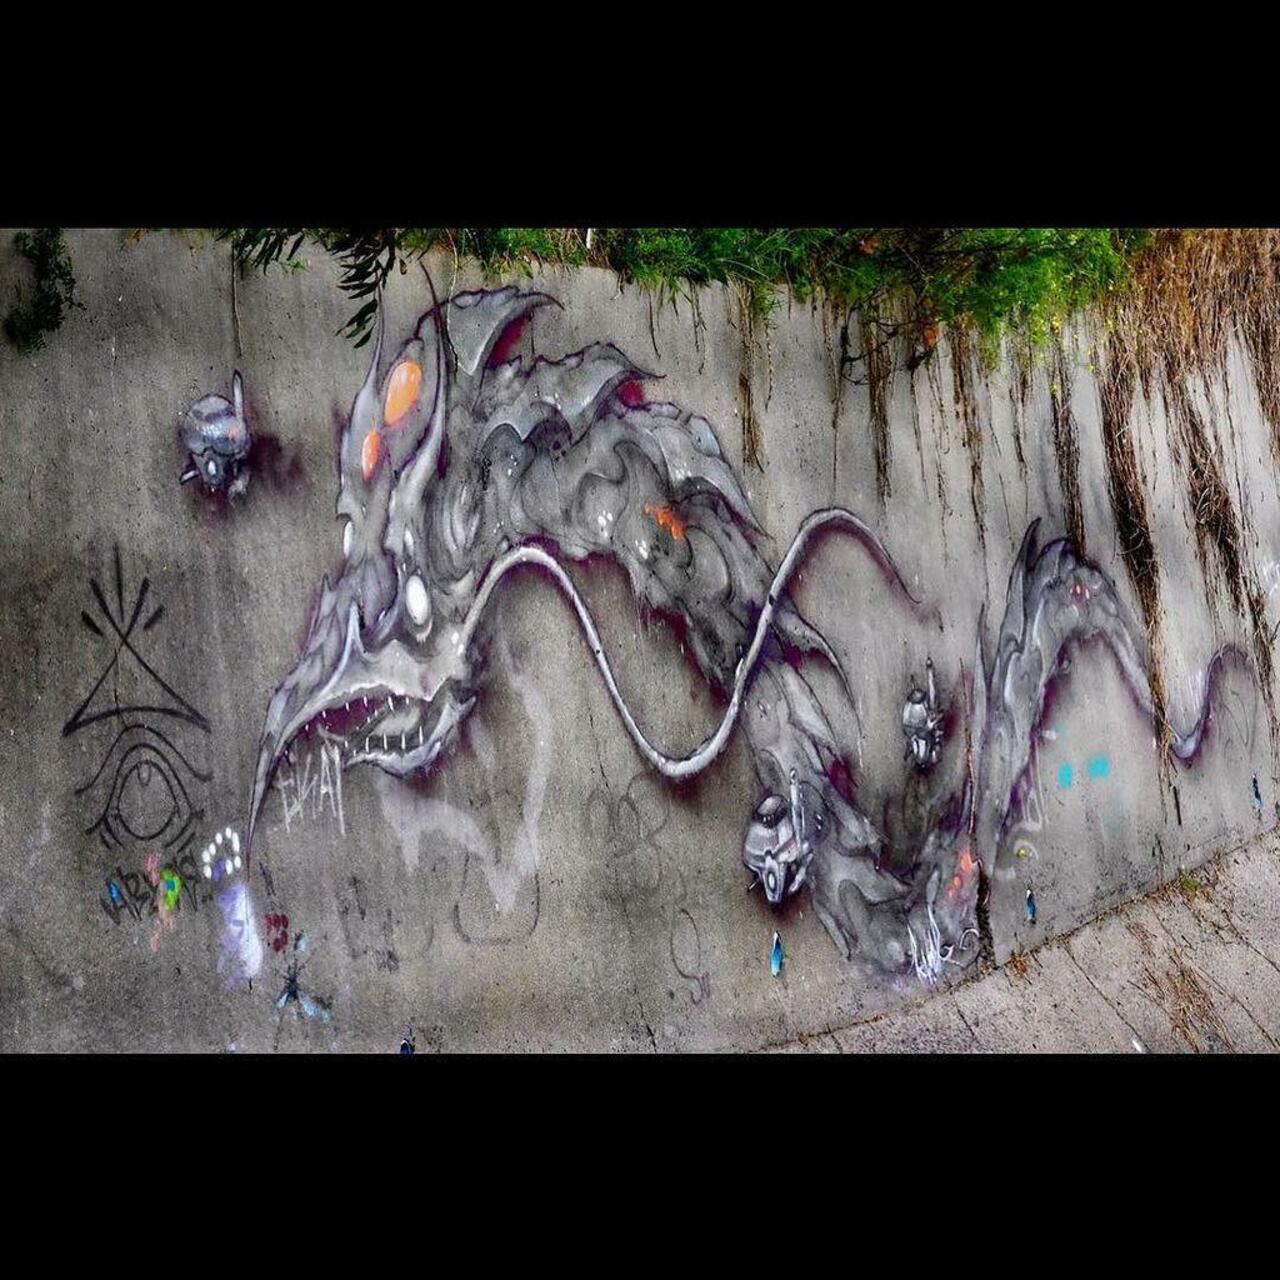 #streetart #urbanart #aerosolart #graff #streetartmelbourne #graffiti #melbournestreetart #taggers #tagging dope pi… http://t.co/6GOPJzMQ9n